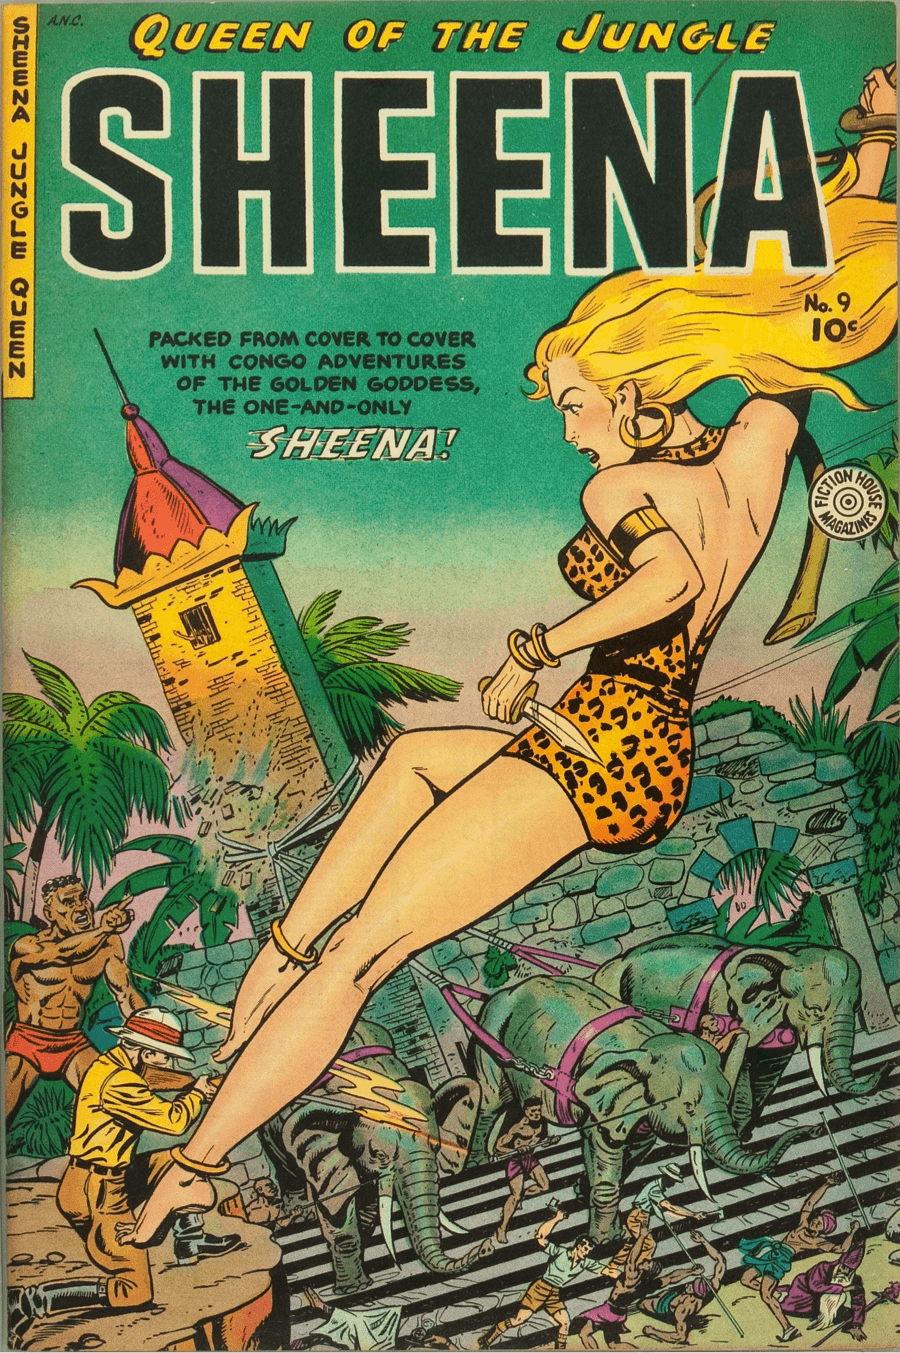 Comic de Sheena -Sheena #9 Fall, 1950- en el Museo Digital del Cómic